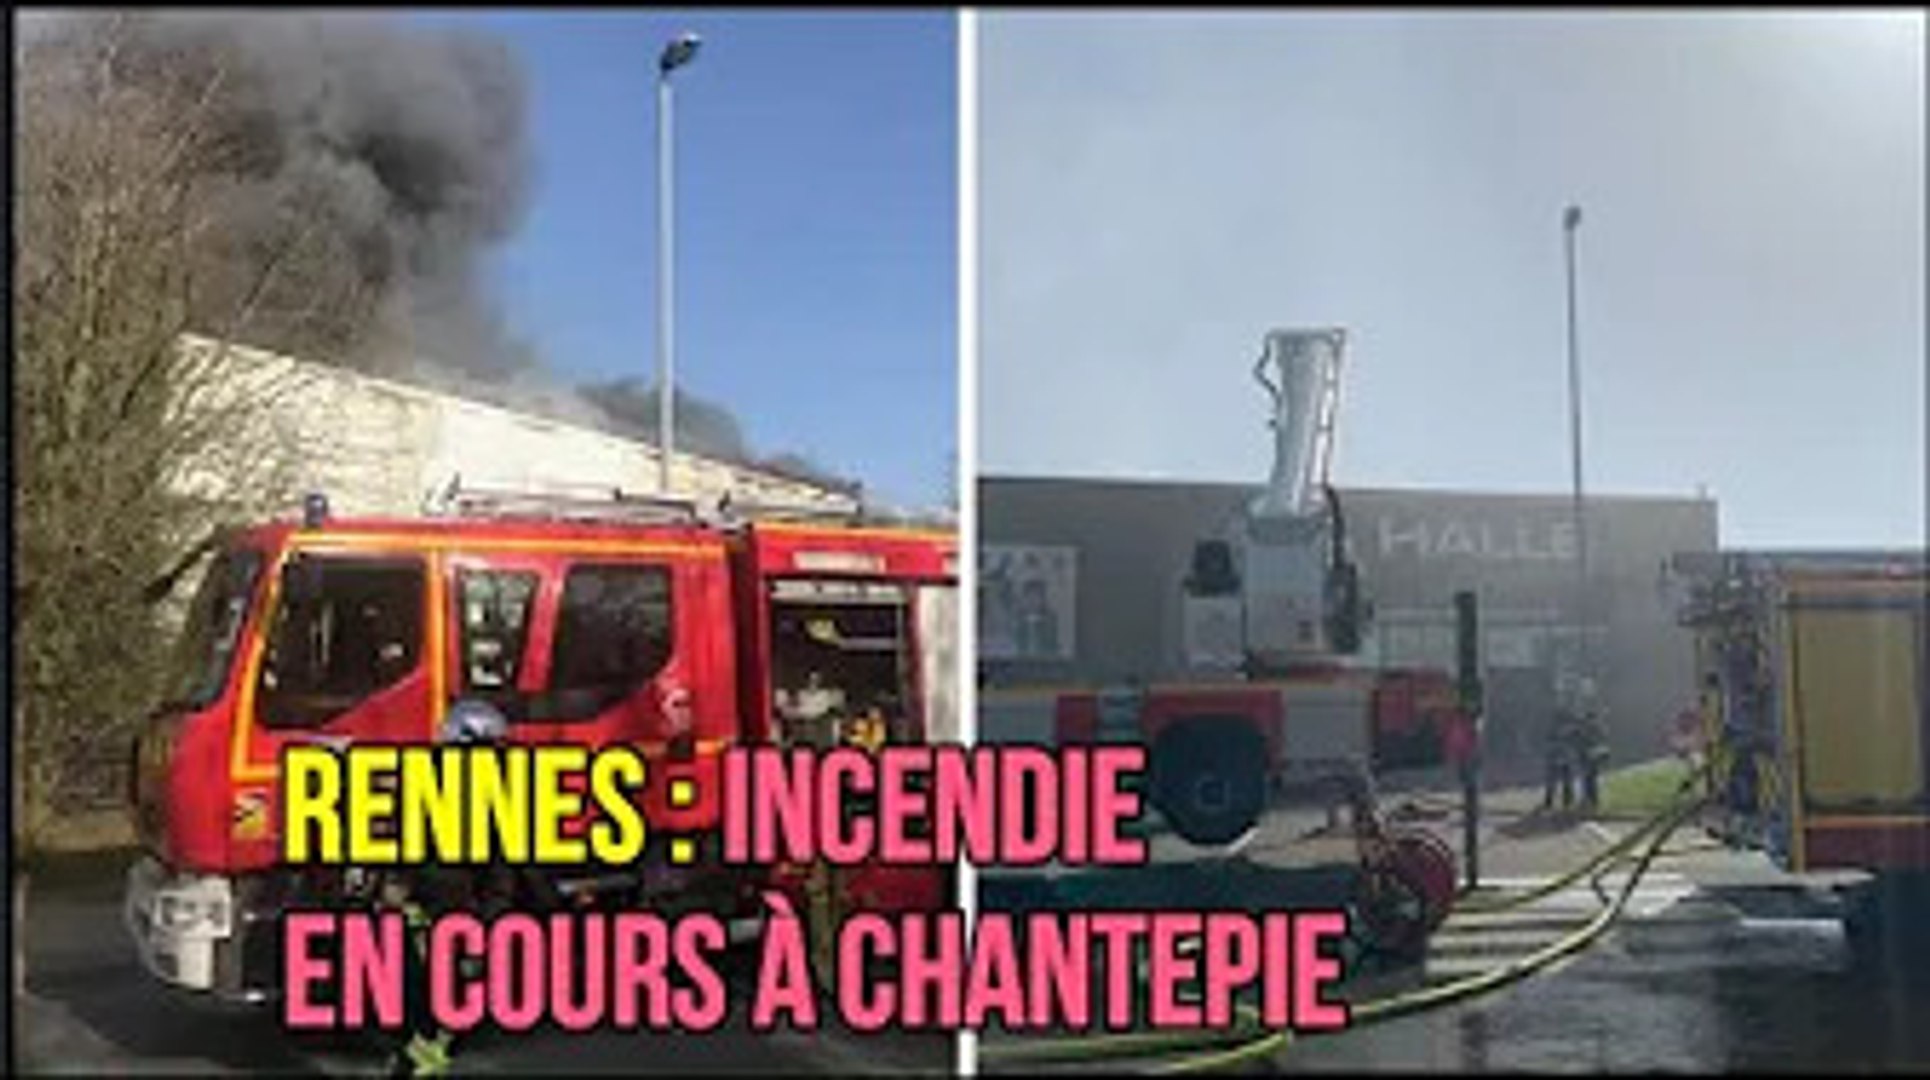 Rennes : incendie en cours à Chantepie - Vidéo Dailymotion